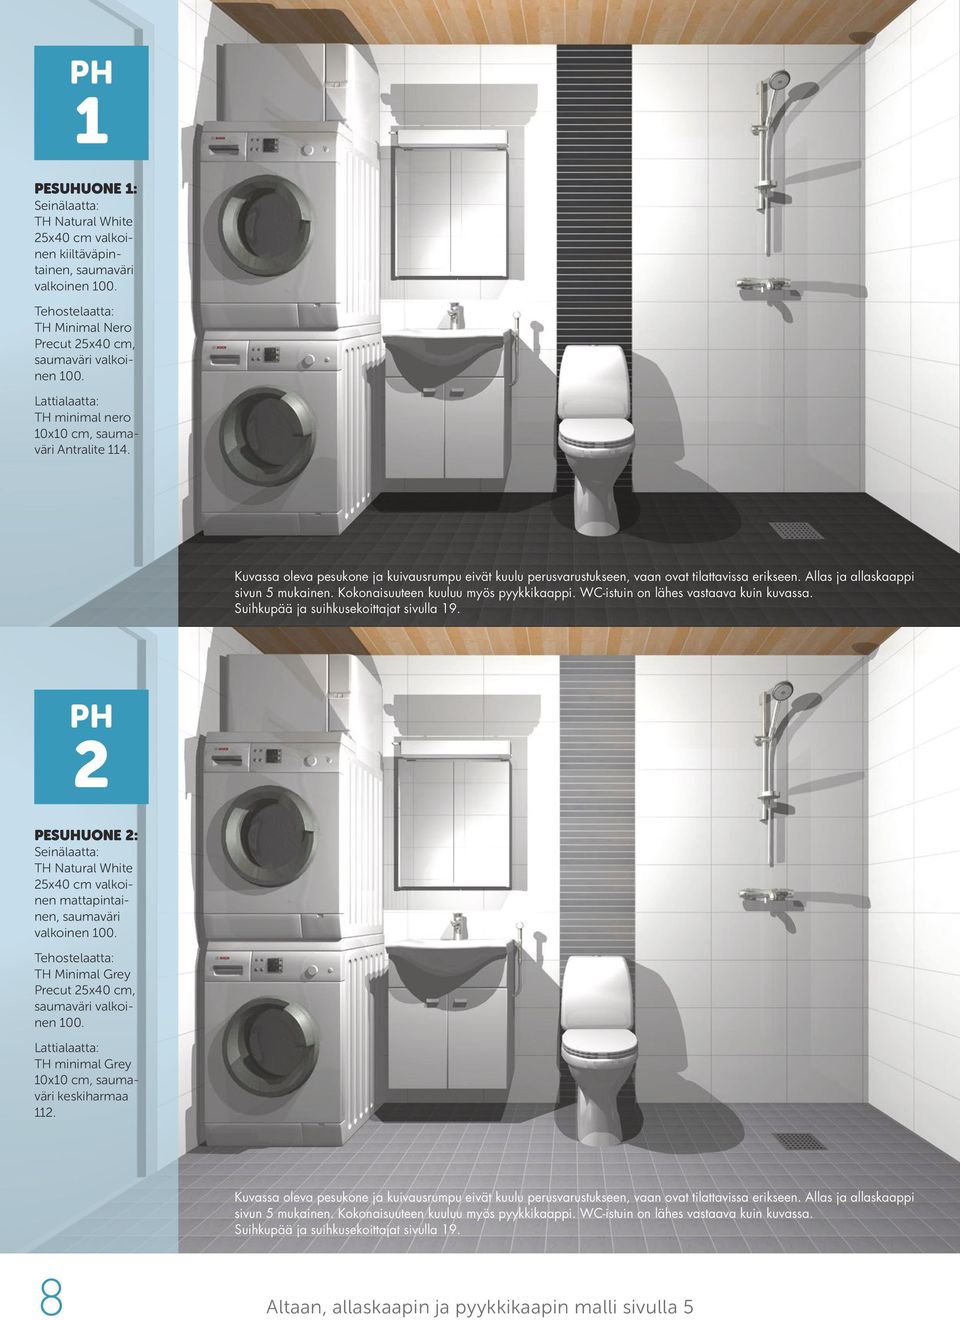 Allas ja allaskaappi sivun 5 mukainen. Kokonaisuuteen kuuluu myös pyykkikaappi. WC-istuin on lähes vastaava kuin kuvassa. Suihkupää ja suihkusekoittajat sivulla 19.